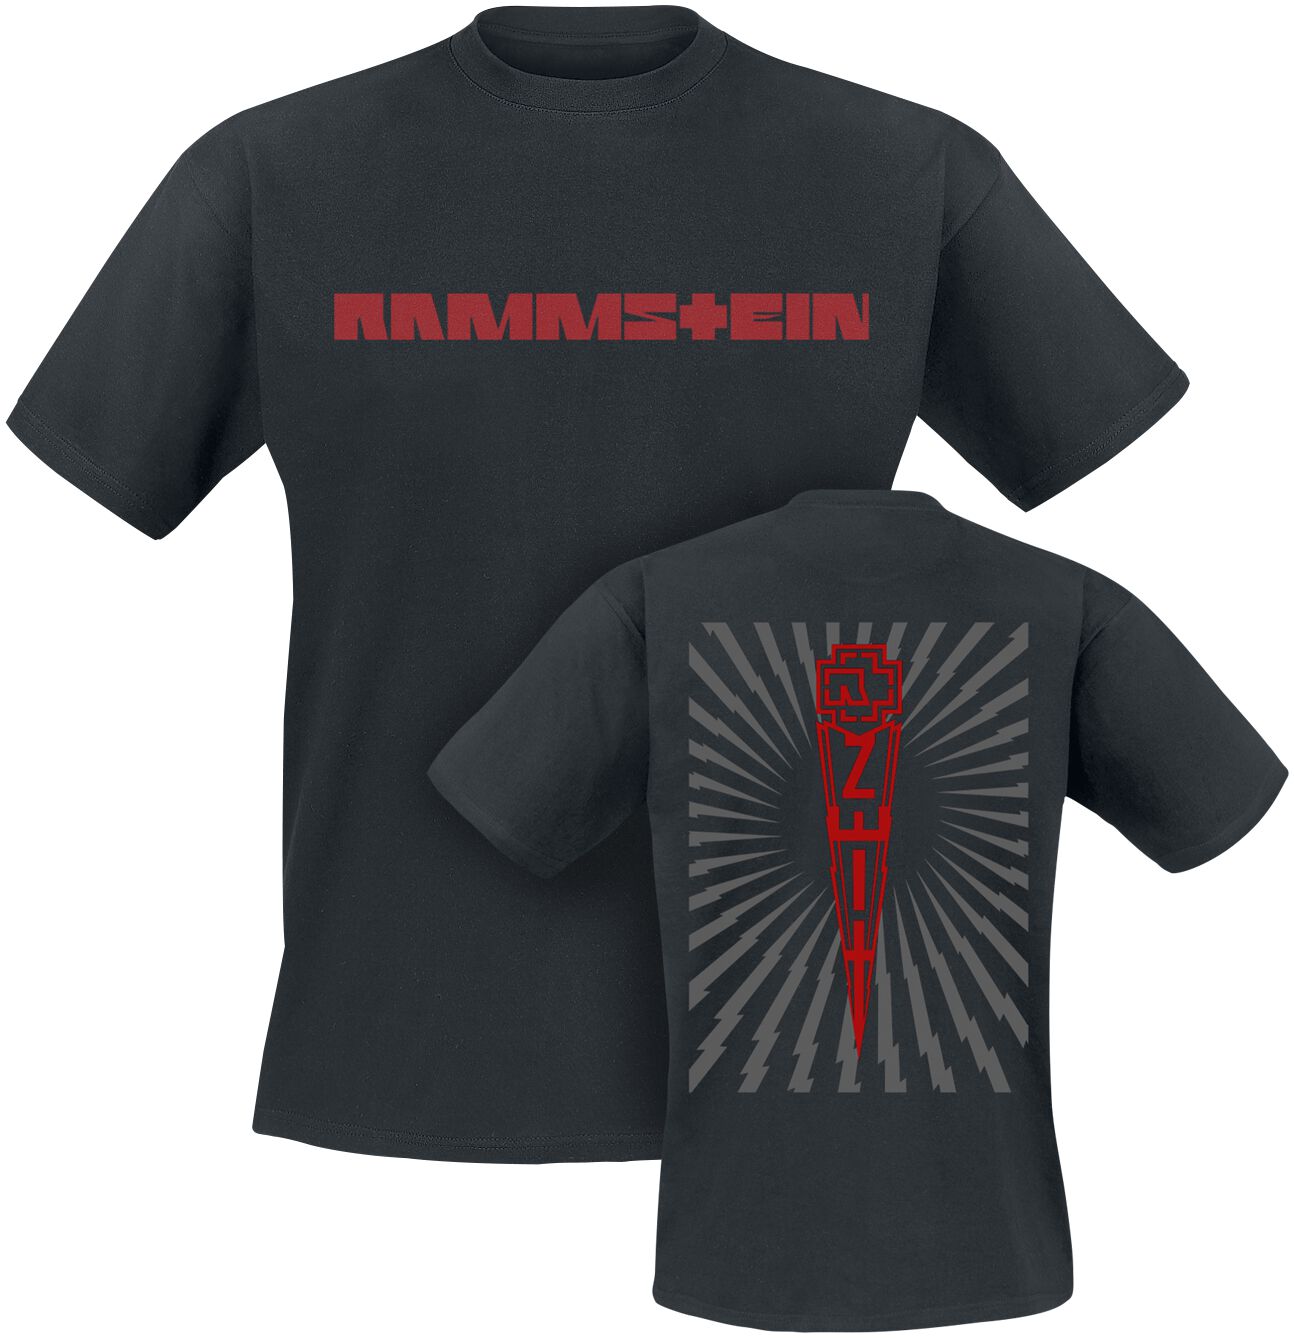 Rammstein T-Shirt - Zeit - S bis 5XL - für Männer - Größe M - schwarz  - Lizenziertes Merchandise!